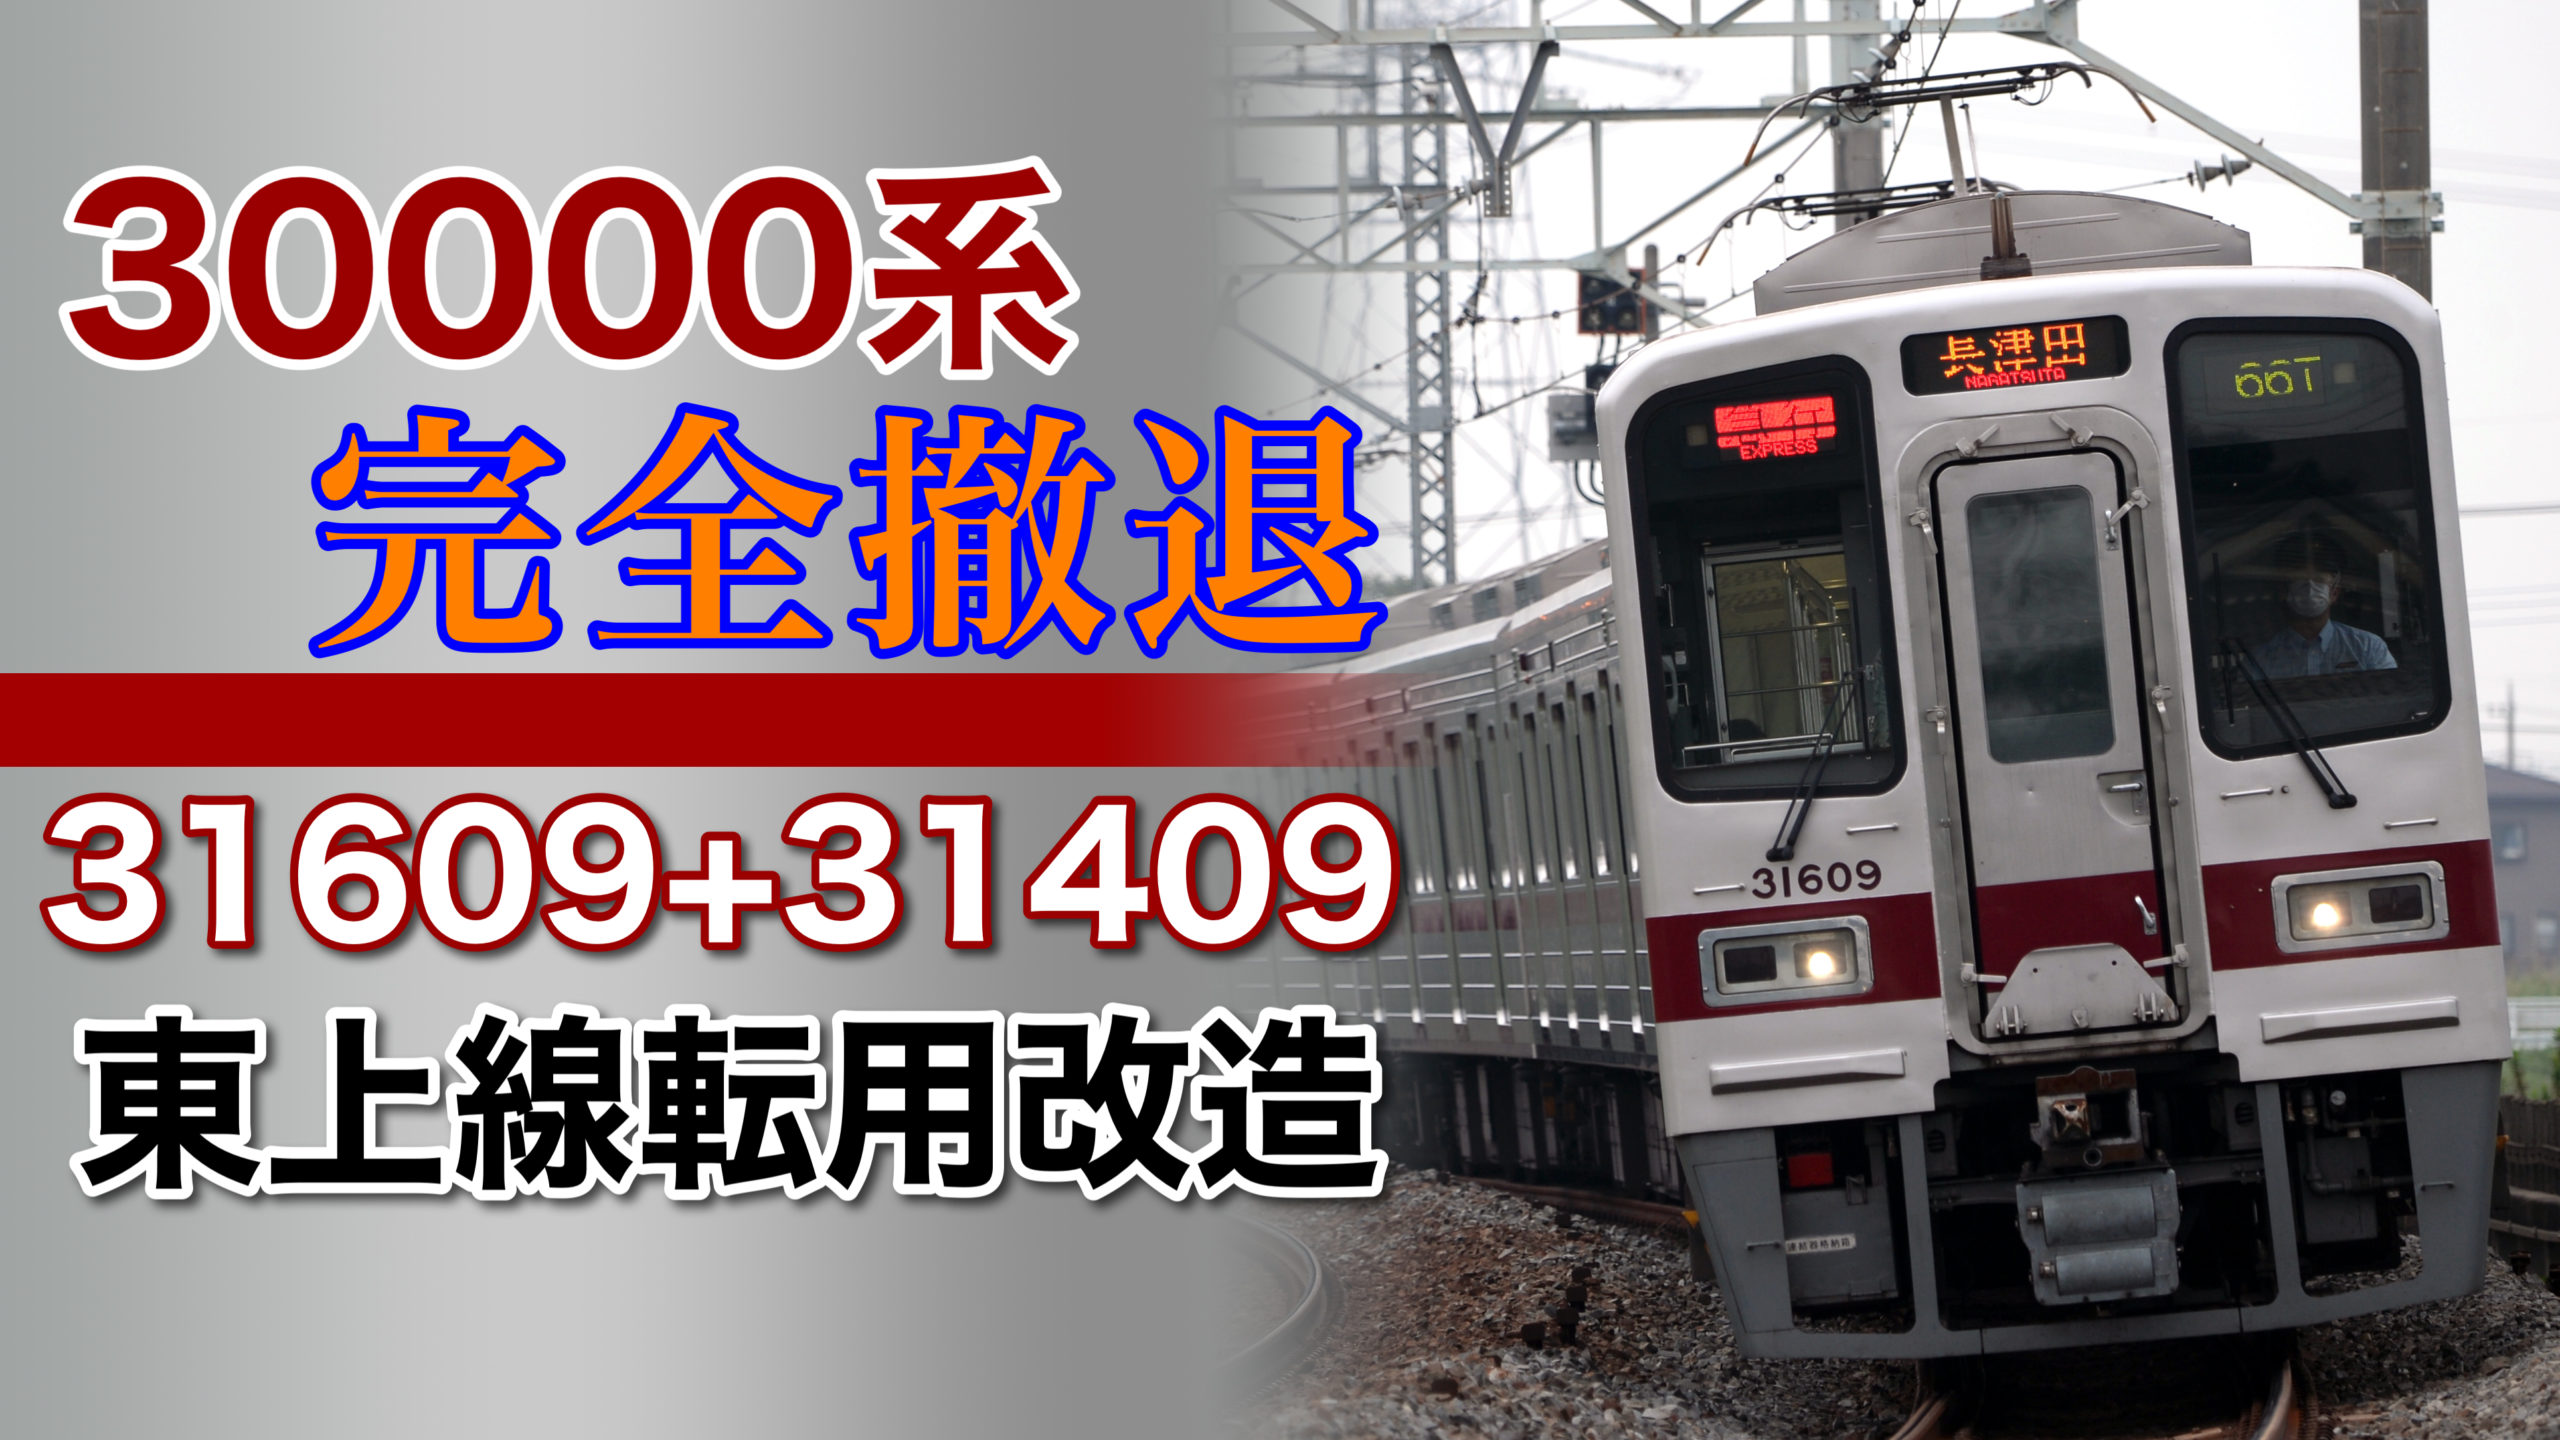 完全撤退】東武30000系31609F+31409Fも本線から東上線へ転属か | 鉄道 